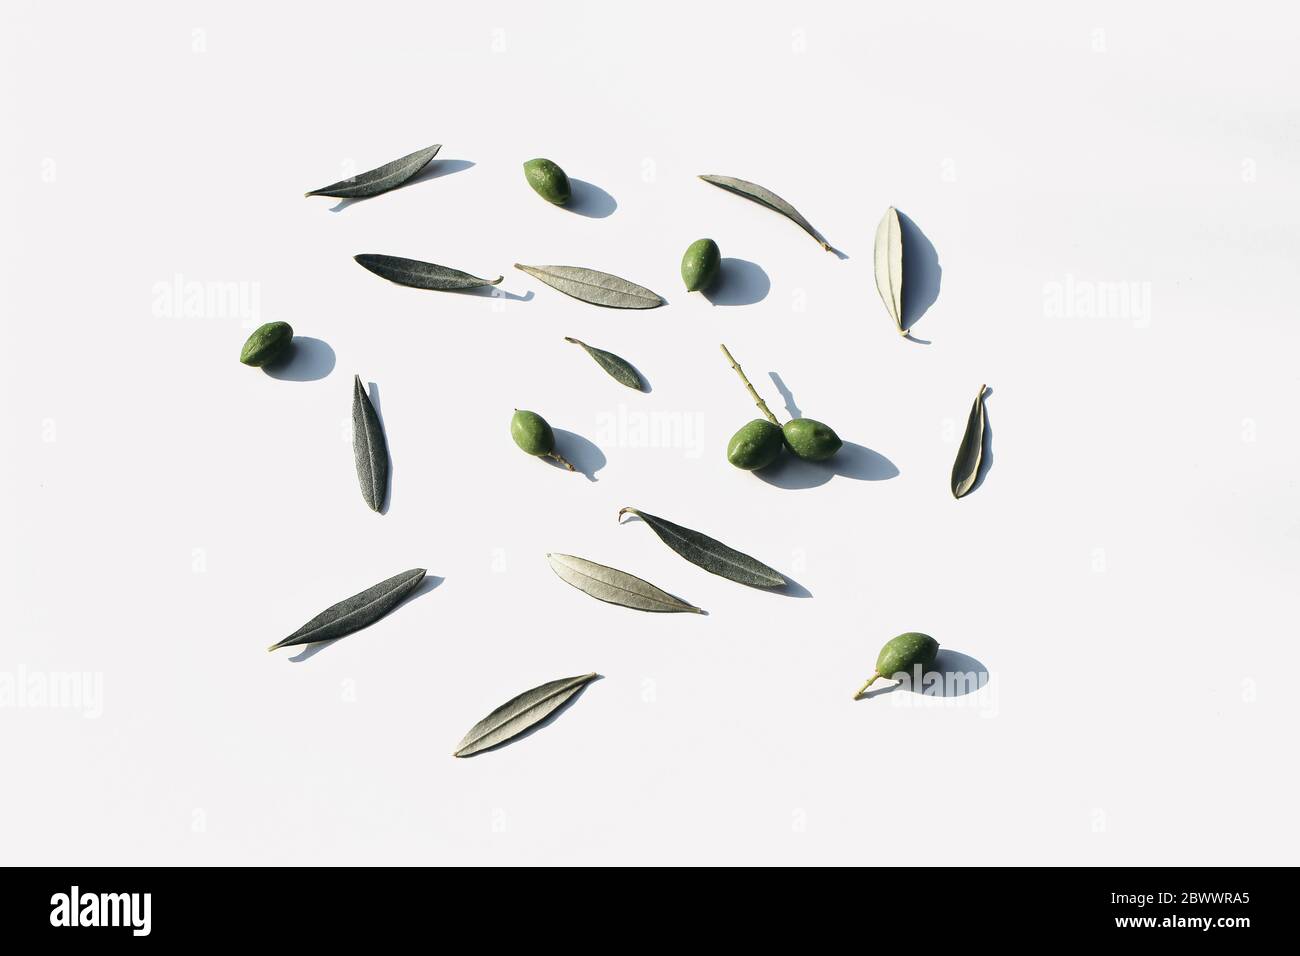 Estate modello botanico. Composizione floreale alimentare di frutta verde d'oliva e foglie in luce solare isolato su sfondo bianco della tavola. Mediterraneo Foto Stock